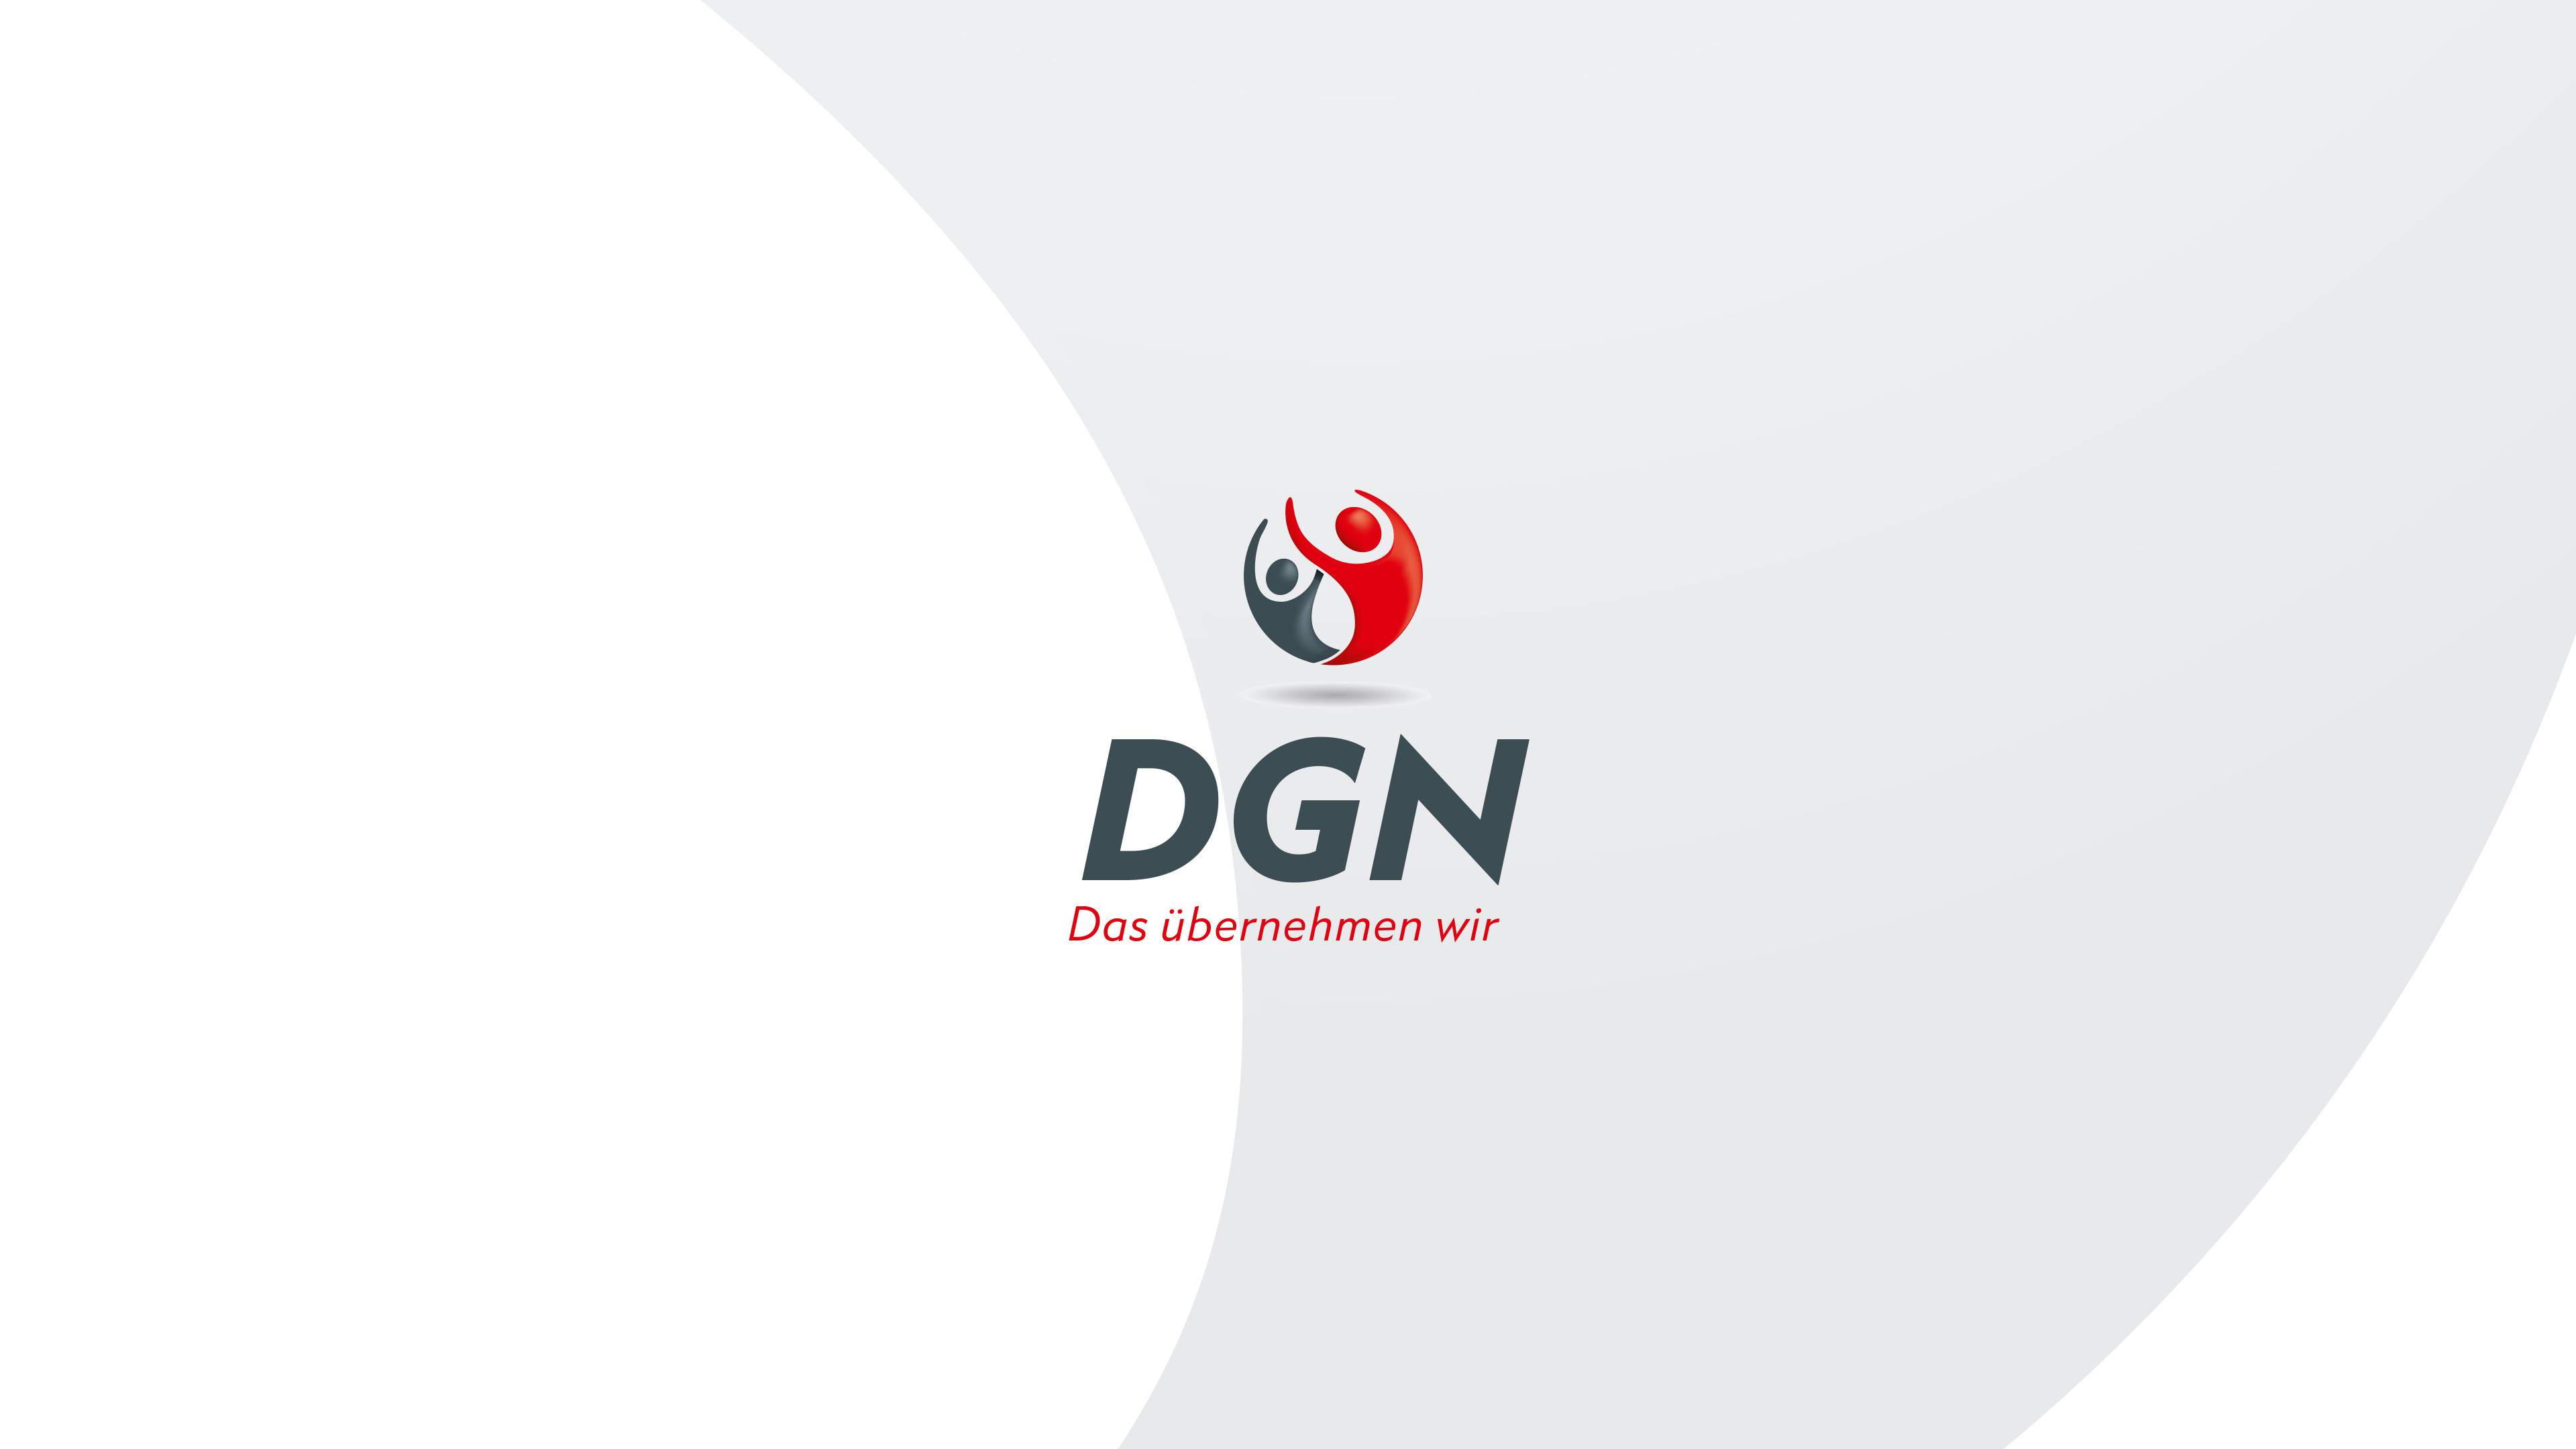 Logo von DGN mit Schriftzug "Das übernehmen wir" und zwei Silhouetten in Grau und Rot